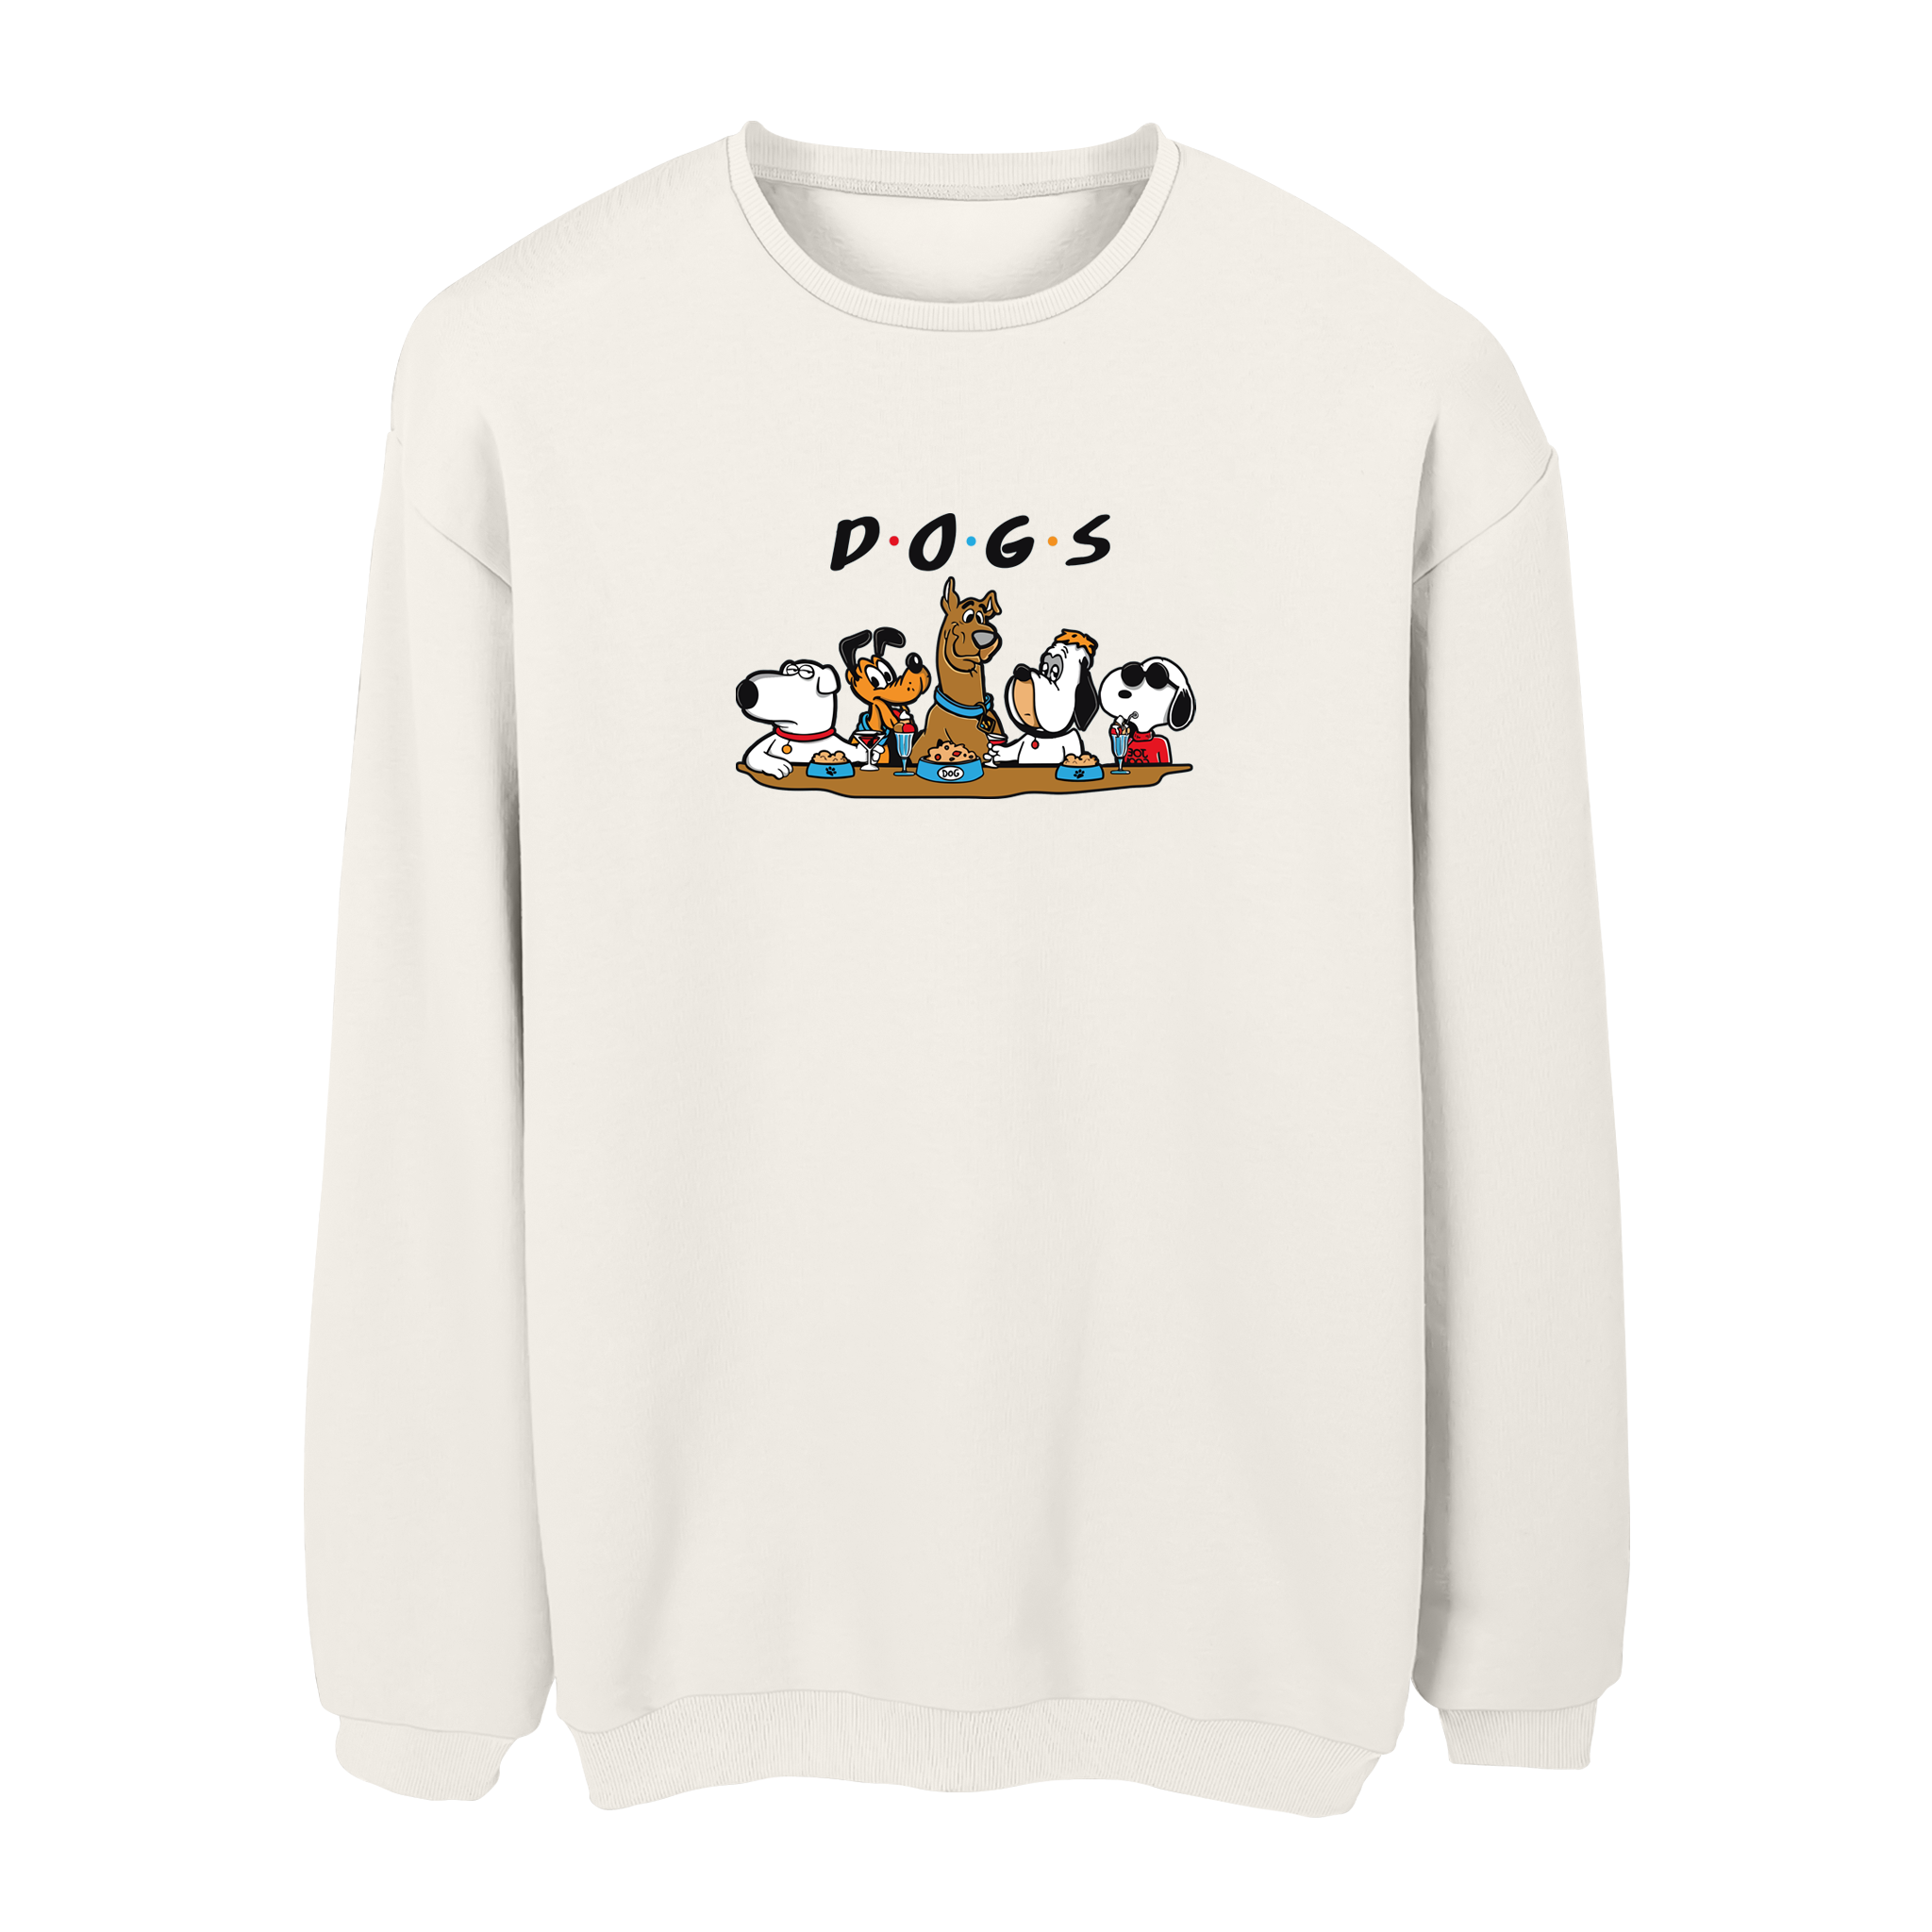 Dogs - Sweatshirt